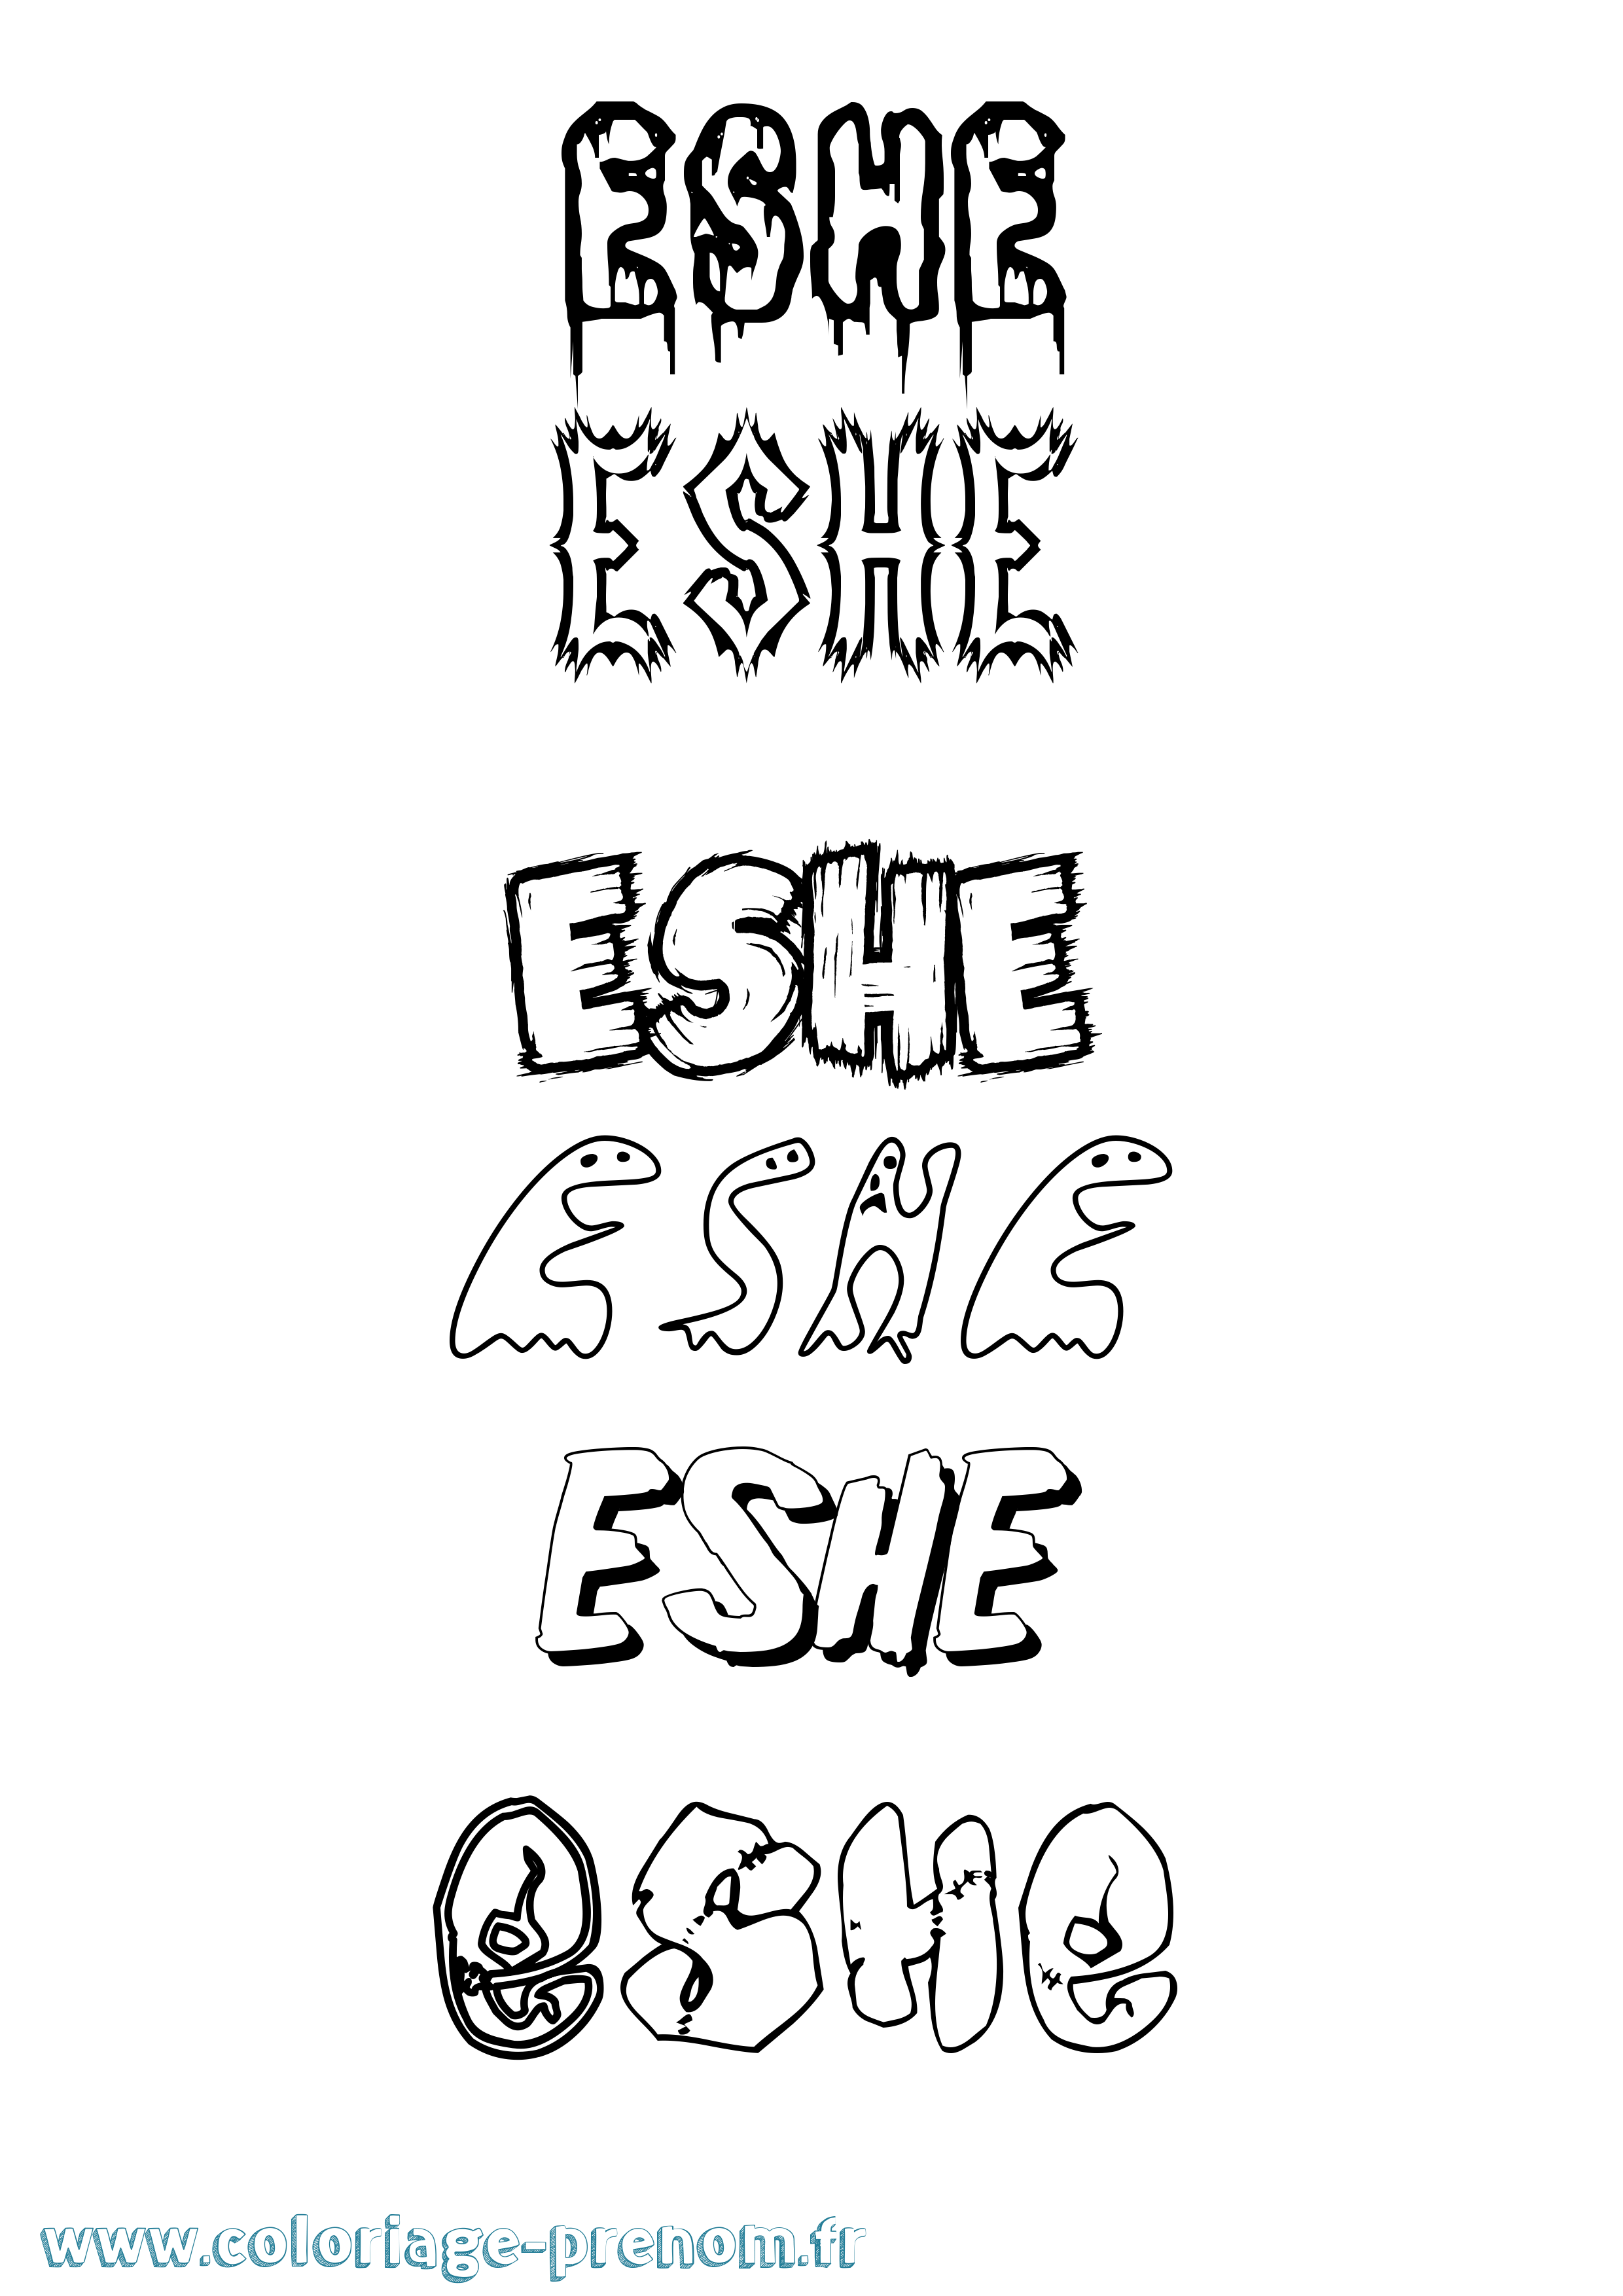 Coloriage prénom Eshe Frisson